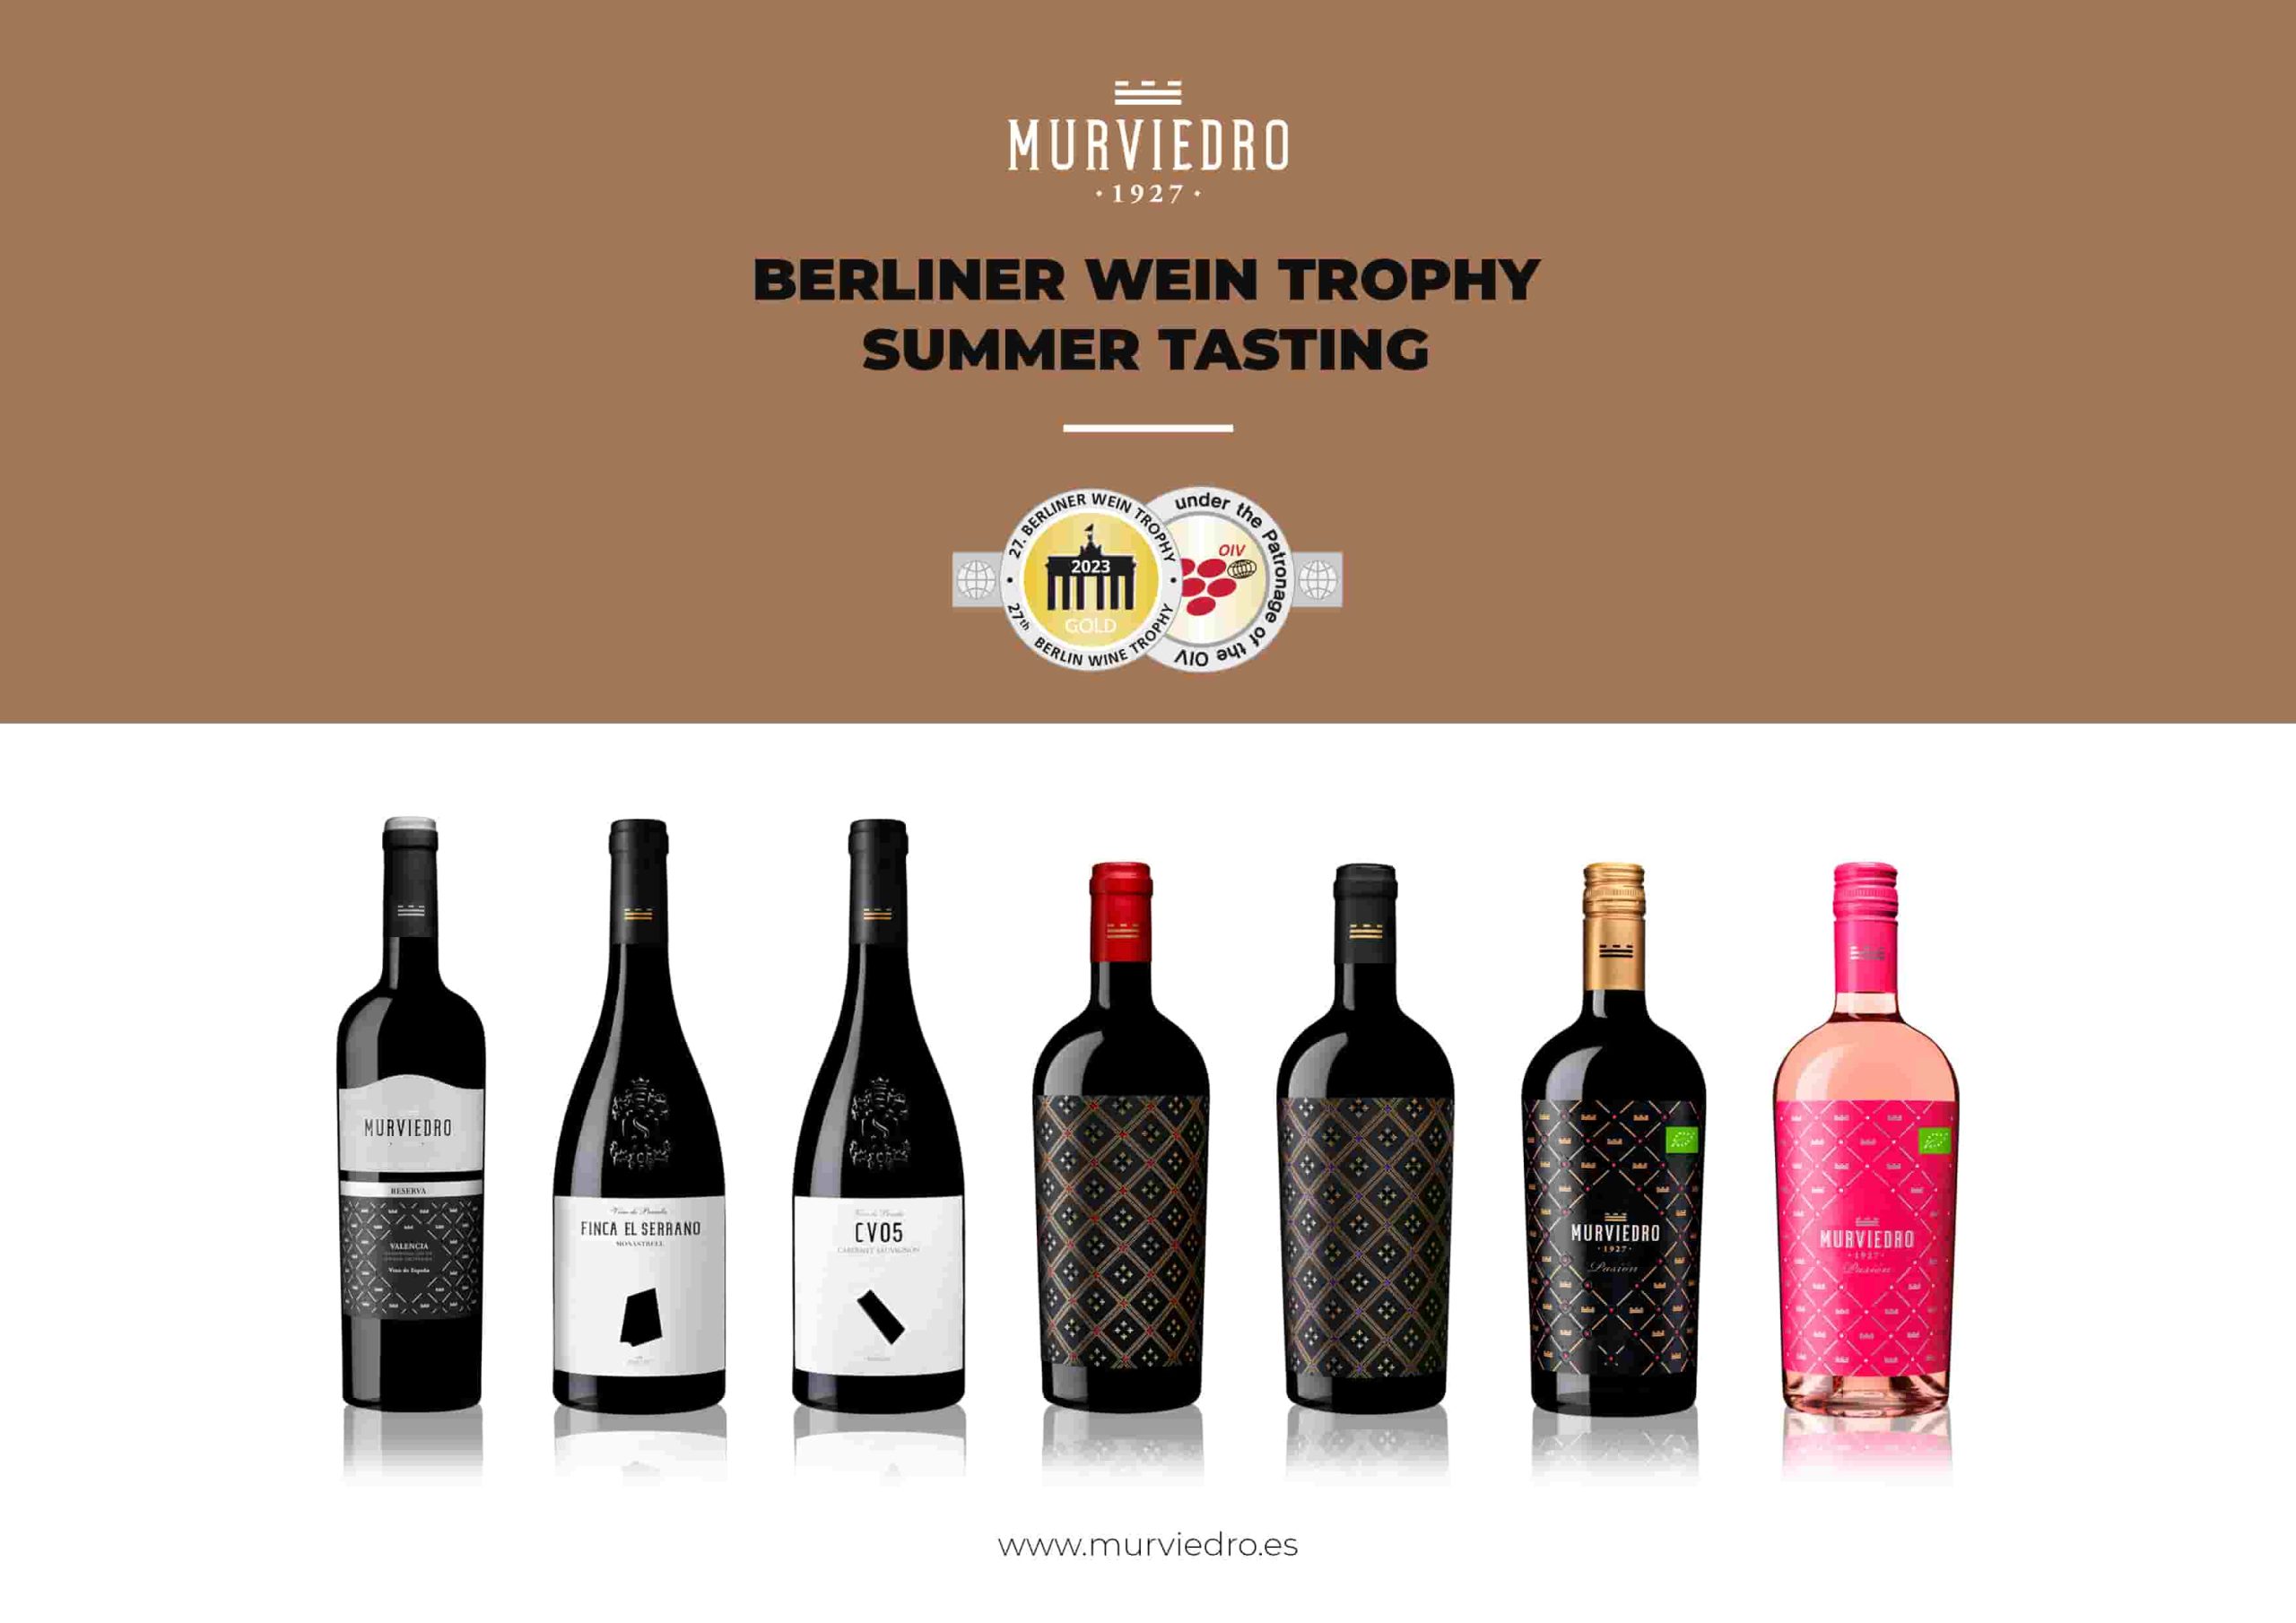 Murviedro triunfa con siete medallas de oro en los Berliner Wein Trophy